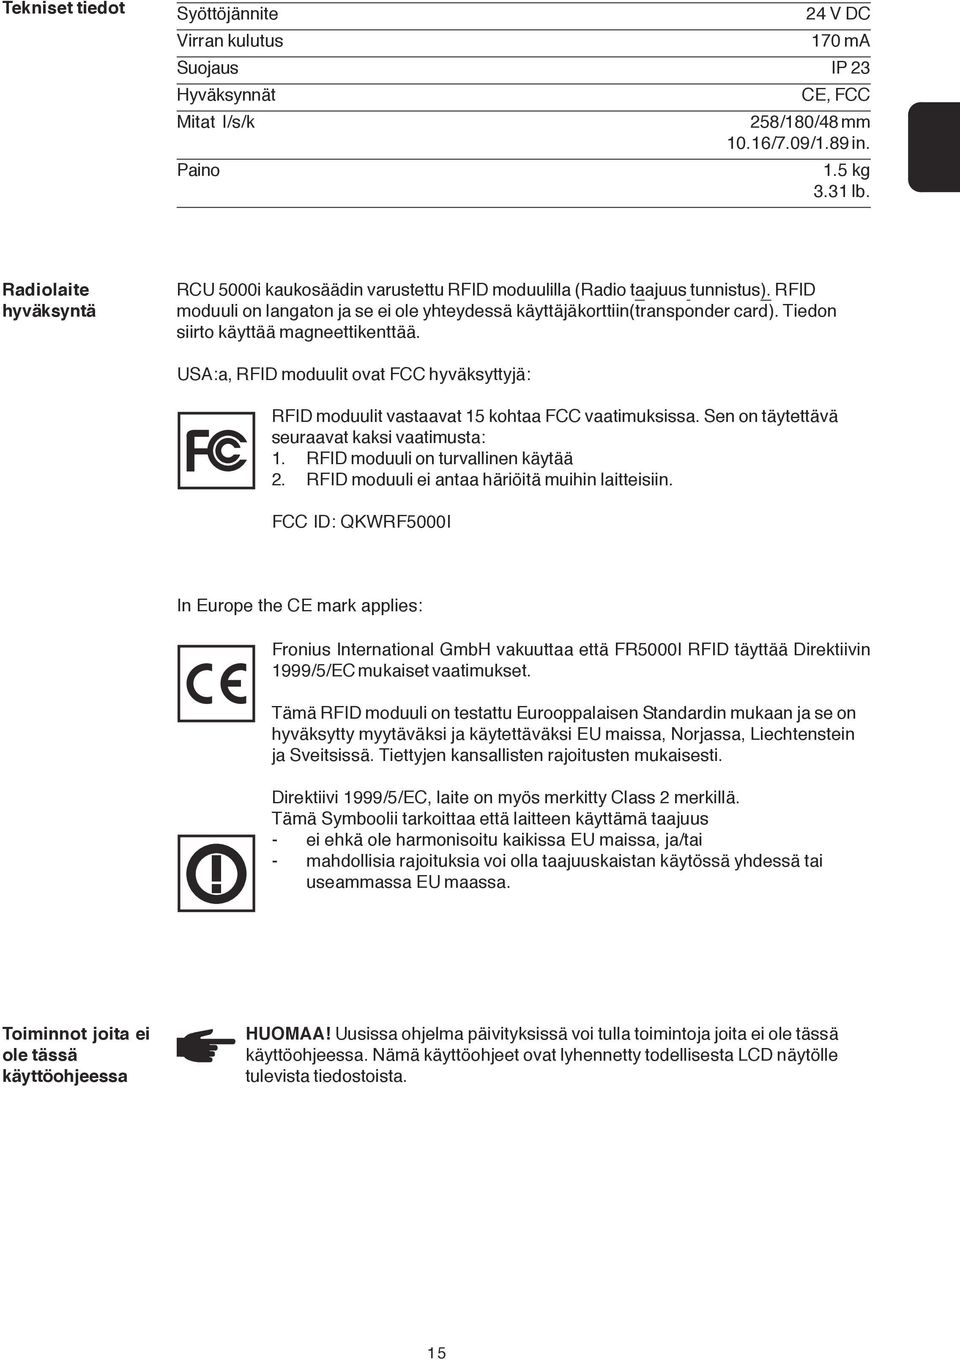 Tiedon siirto käyttää magneettikenttää. USA:a, RFID moduulit ovat FCC hyväksyttyjä: RFID moduulit vastaavat 15 kohtaa FCC vaatimuksissa. Sen on täytettävä seuraavat kaksi vaatimusta: 1.